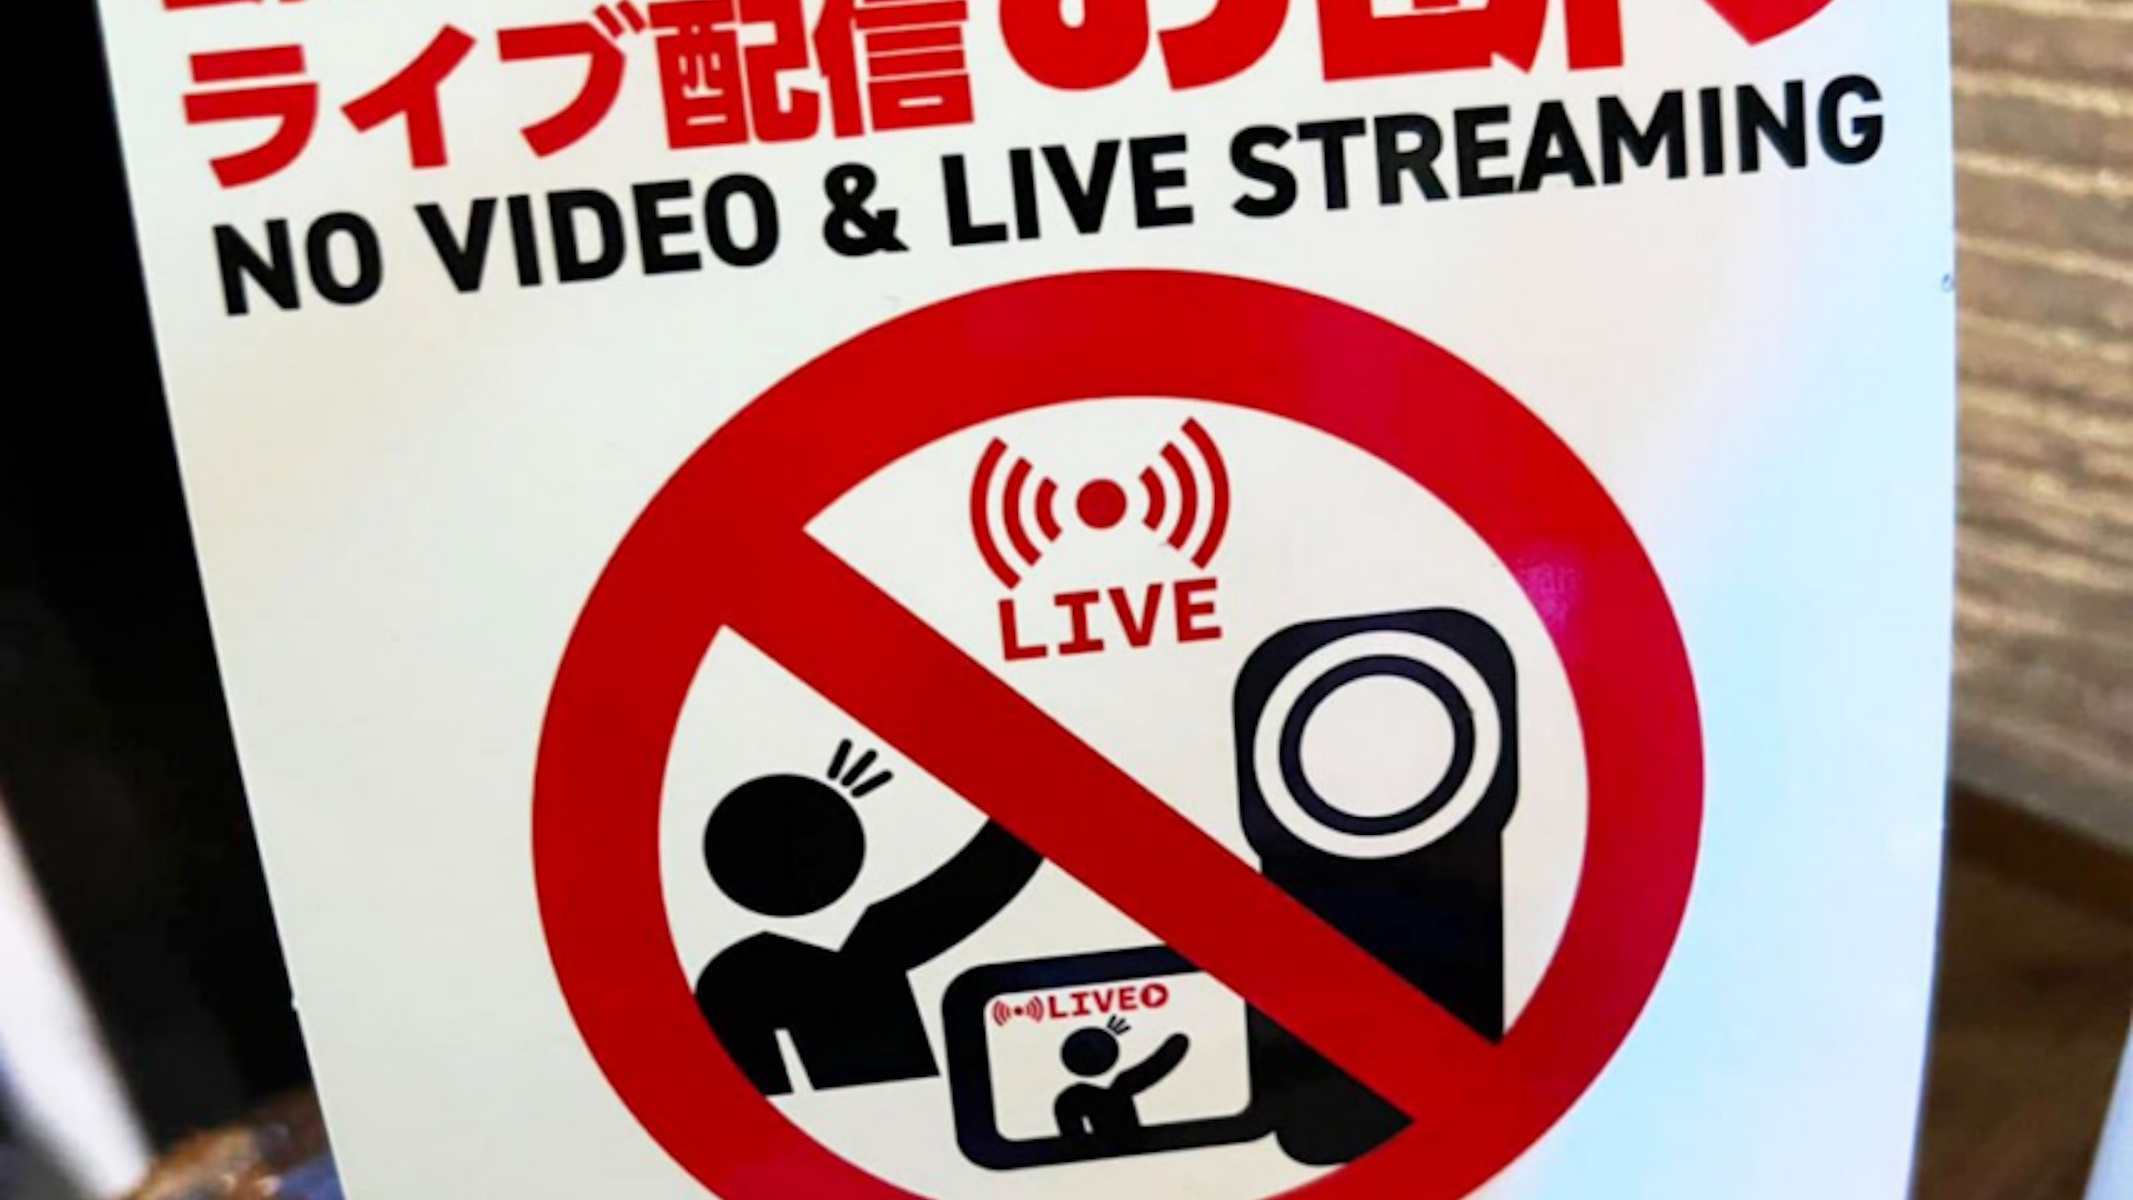 Giappone vieta Live streaming in alcuni locali